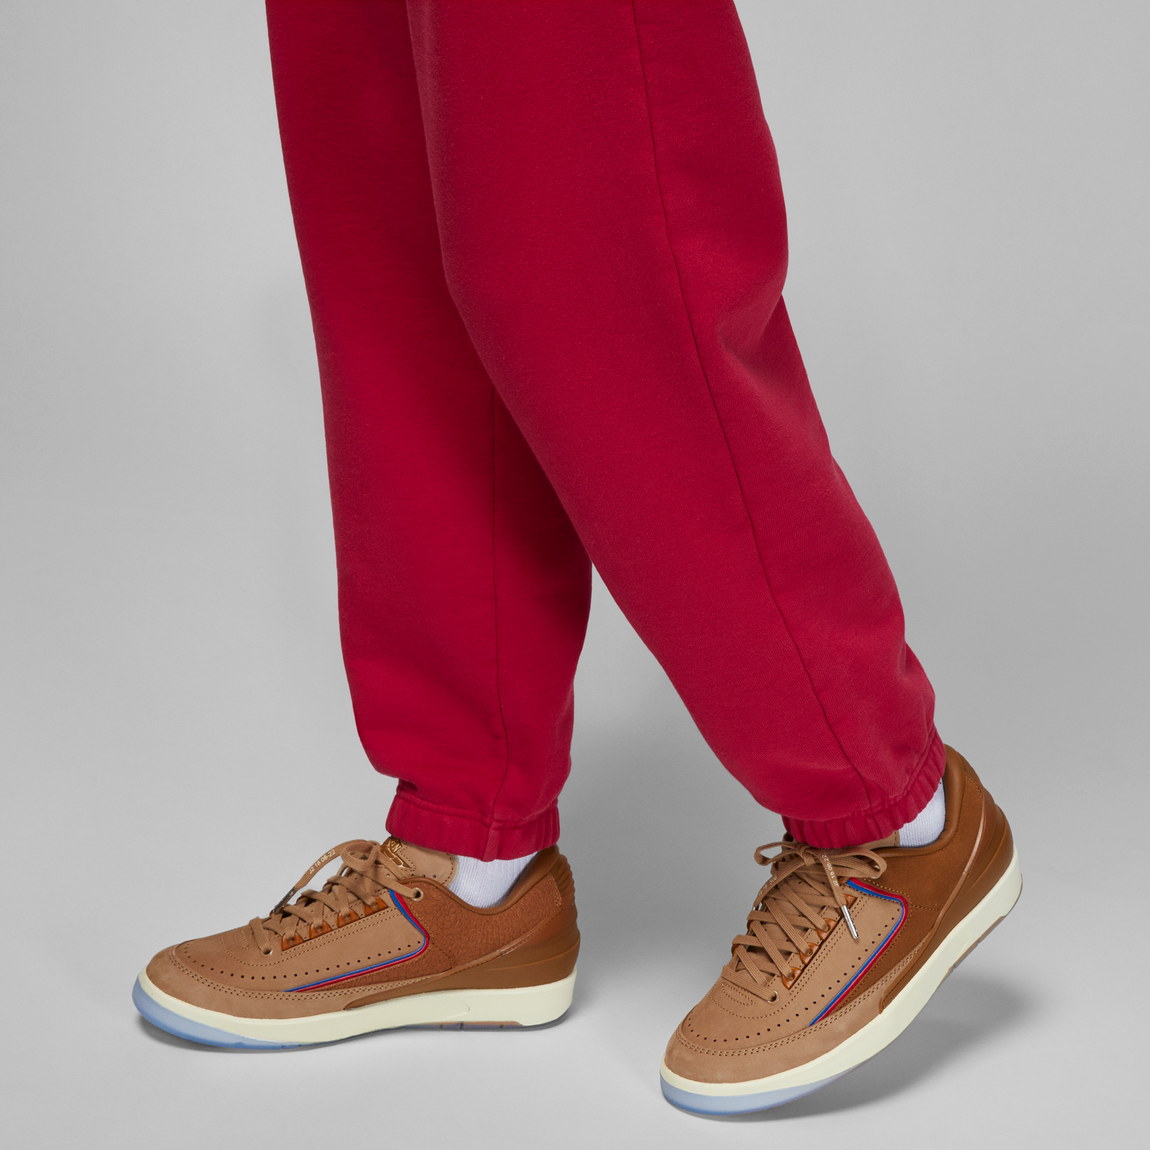 Jordan X TWO18 Women's Fleece Pants (Gym Red/Coconut Milk) - Jordan X TWO18 Women's Fleece Pants (Gym Red/Coconut Milk) - 